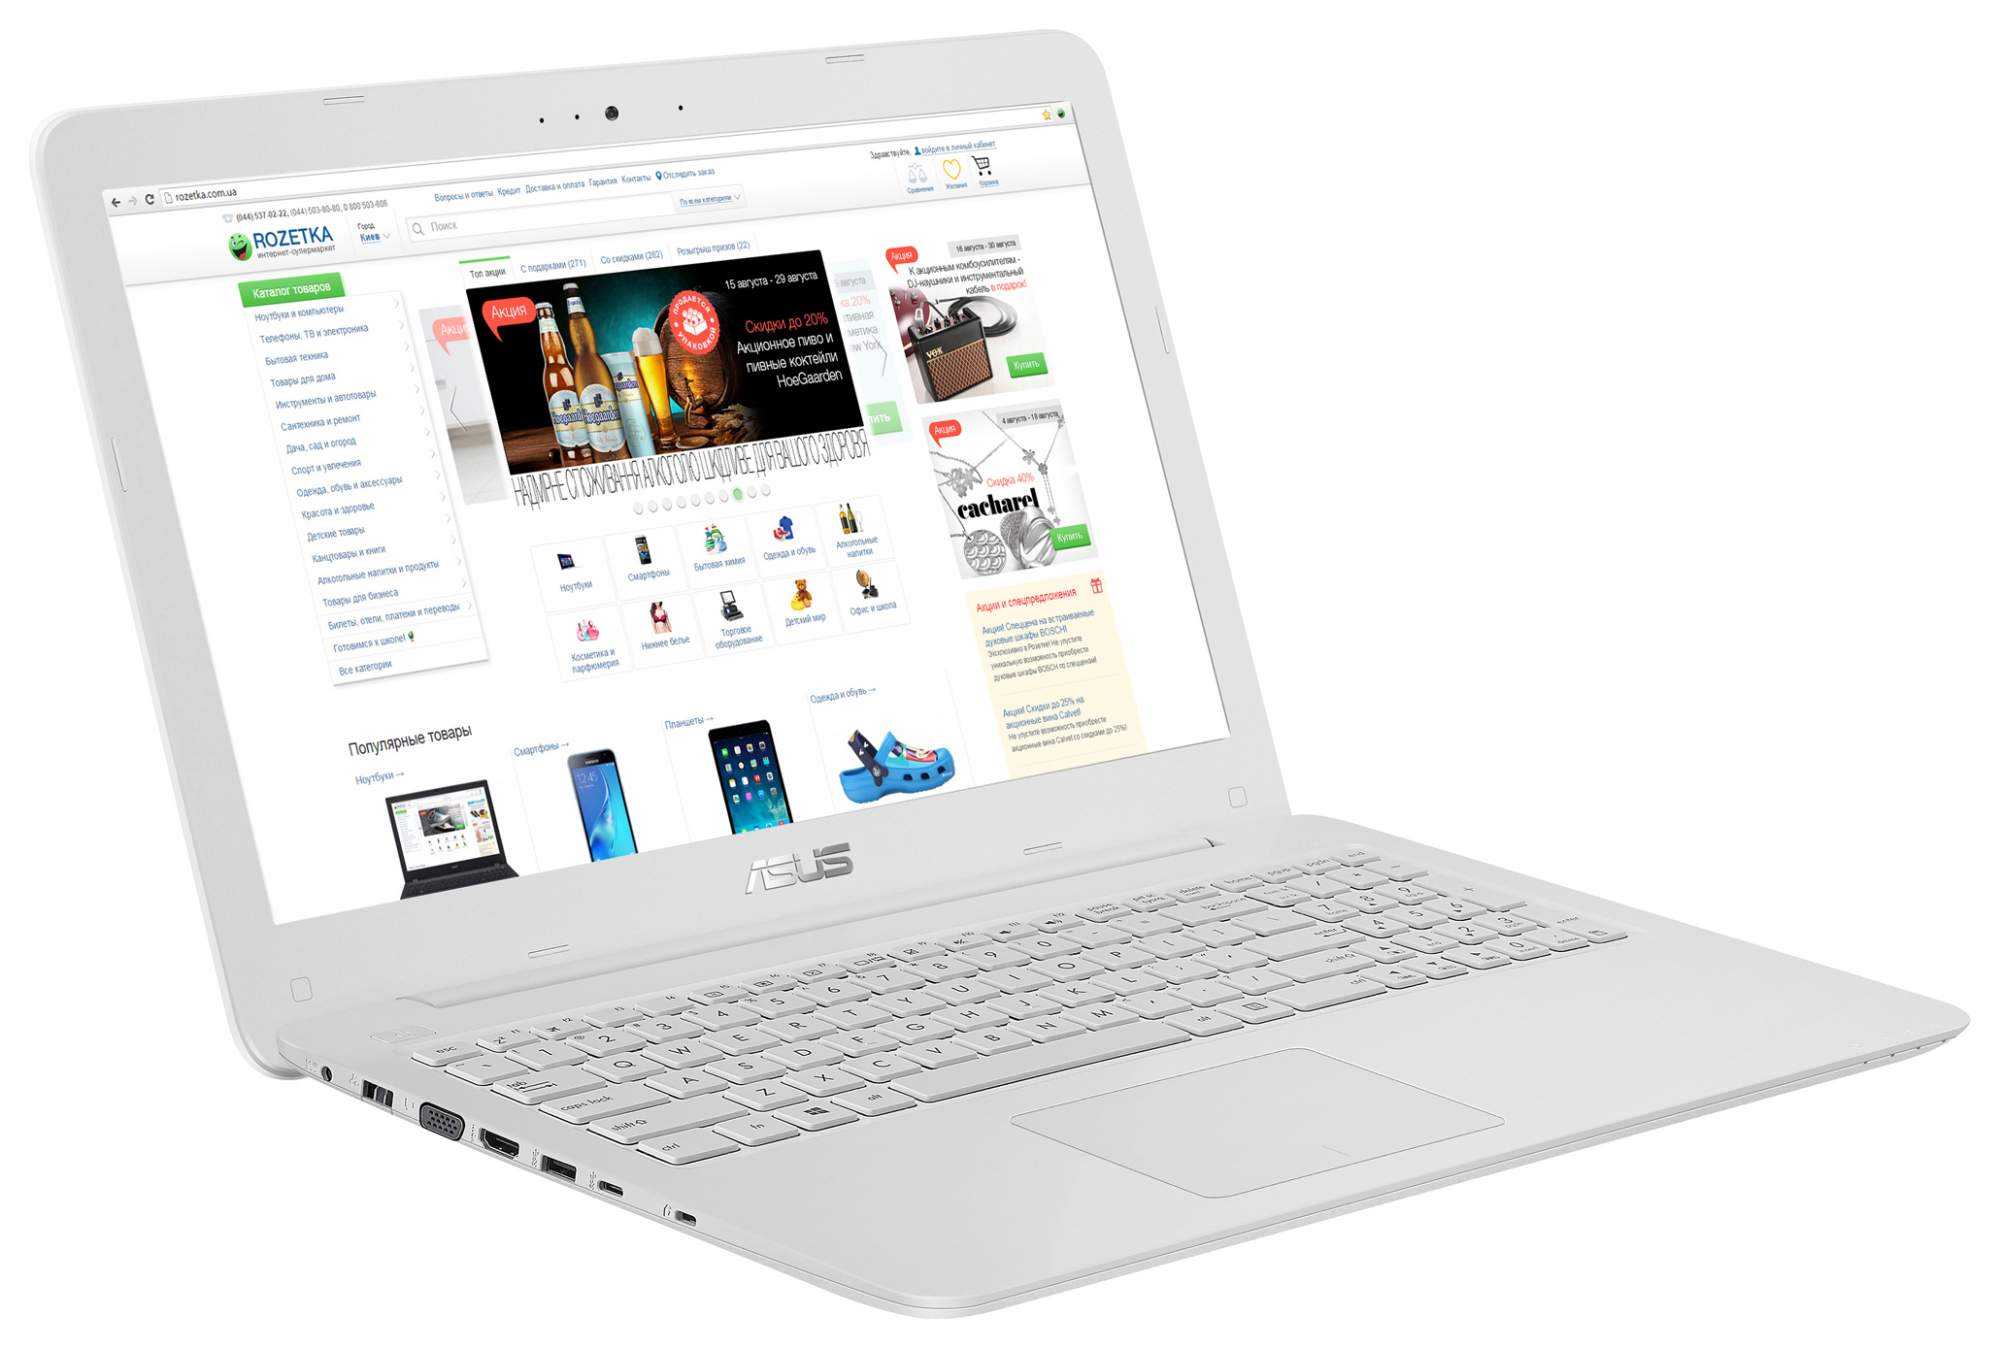 Отзывы asus vivobook max x541uv | ноутбуки asus | подробные характеристики, видео обзоры, отзывы покупателей